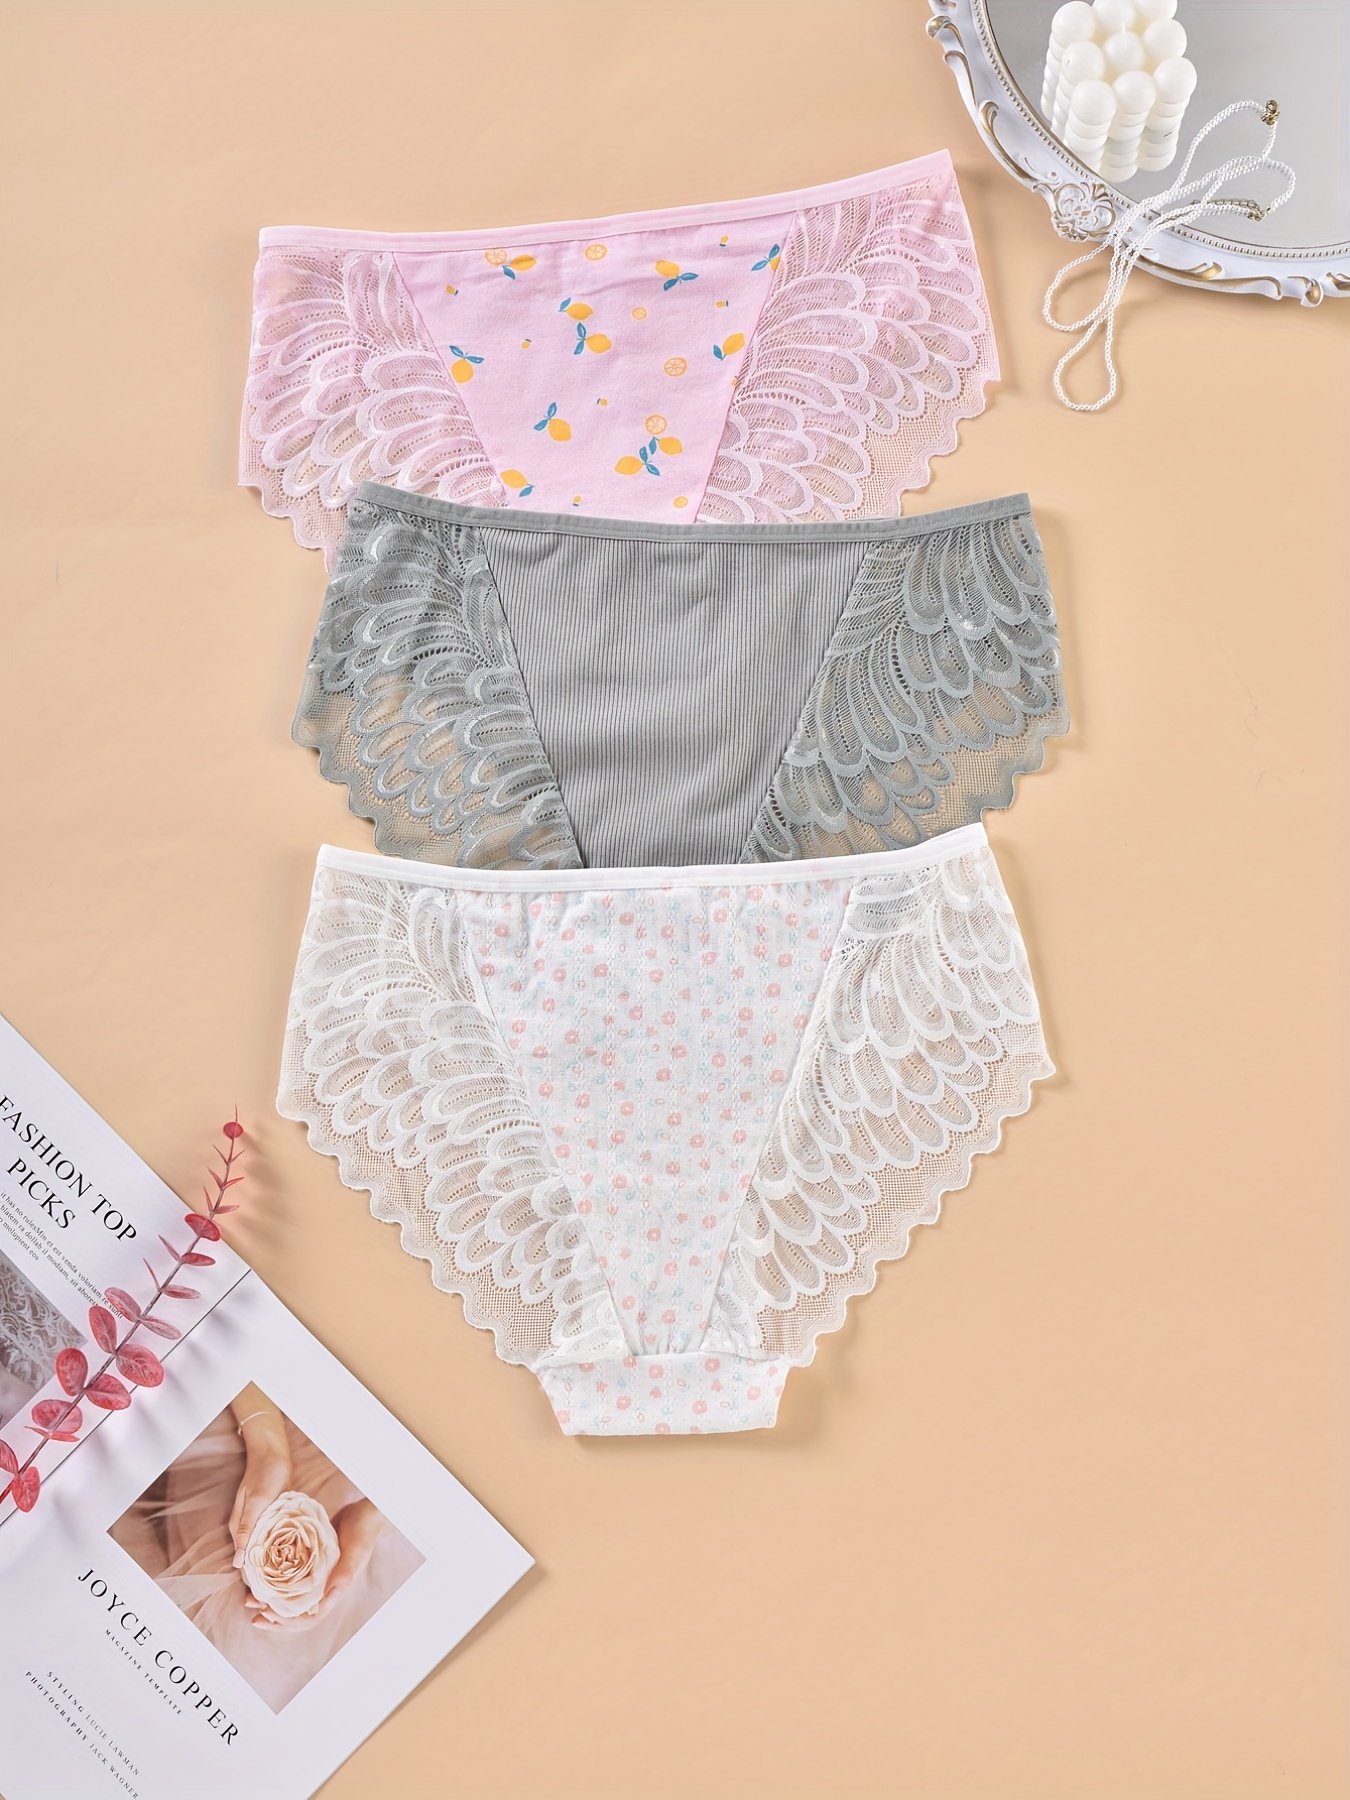 3PCS/Set Women's Panties Sexy Underwear Lace Panties Lingerie Female Floral  Lace Briefs Perspective Design Ladies Pantys